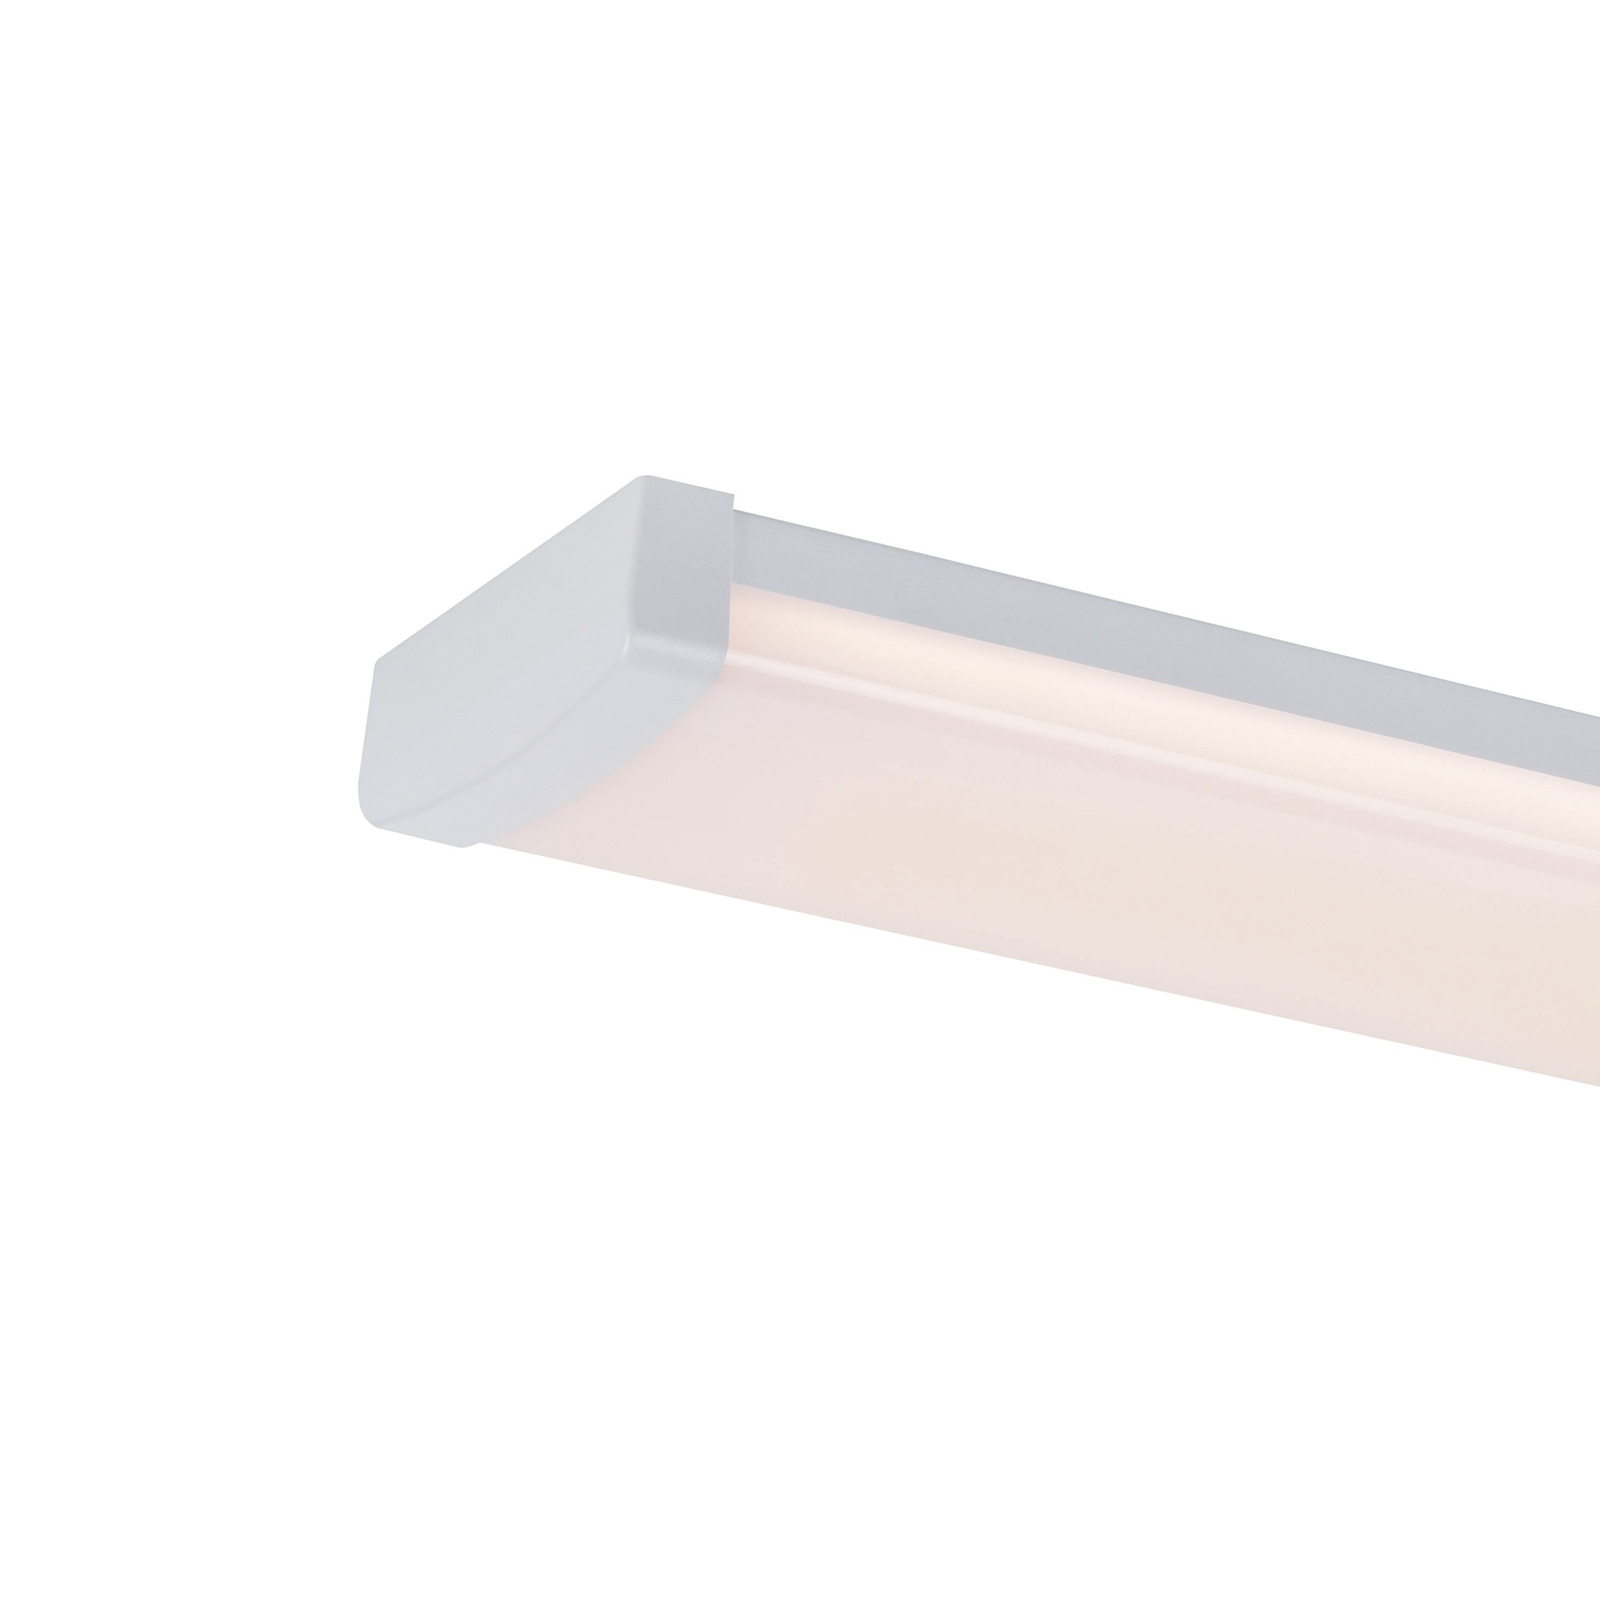 Réglette lumineuse LED Wilmington, longueur 60,5 cm, blanc, plastique